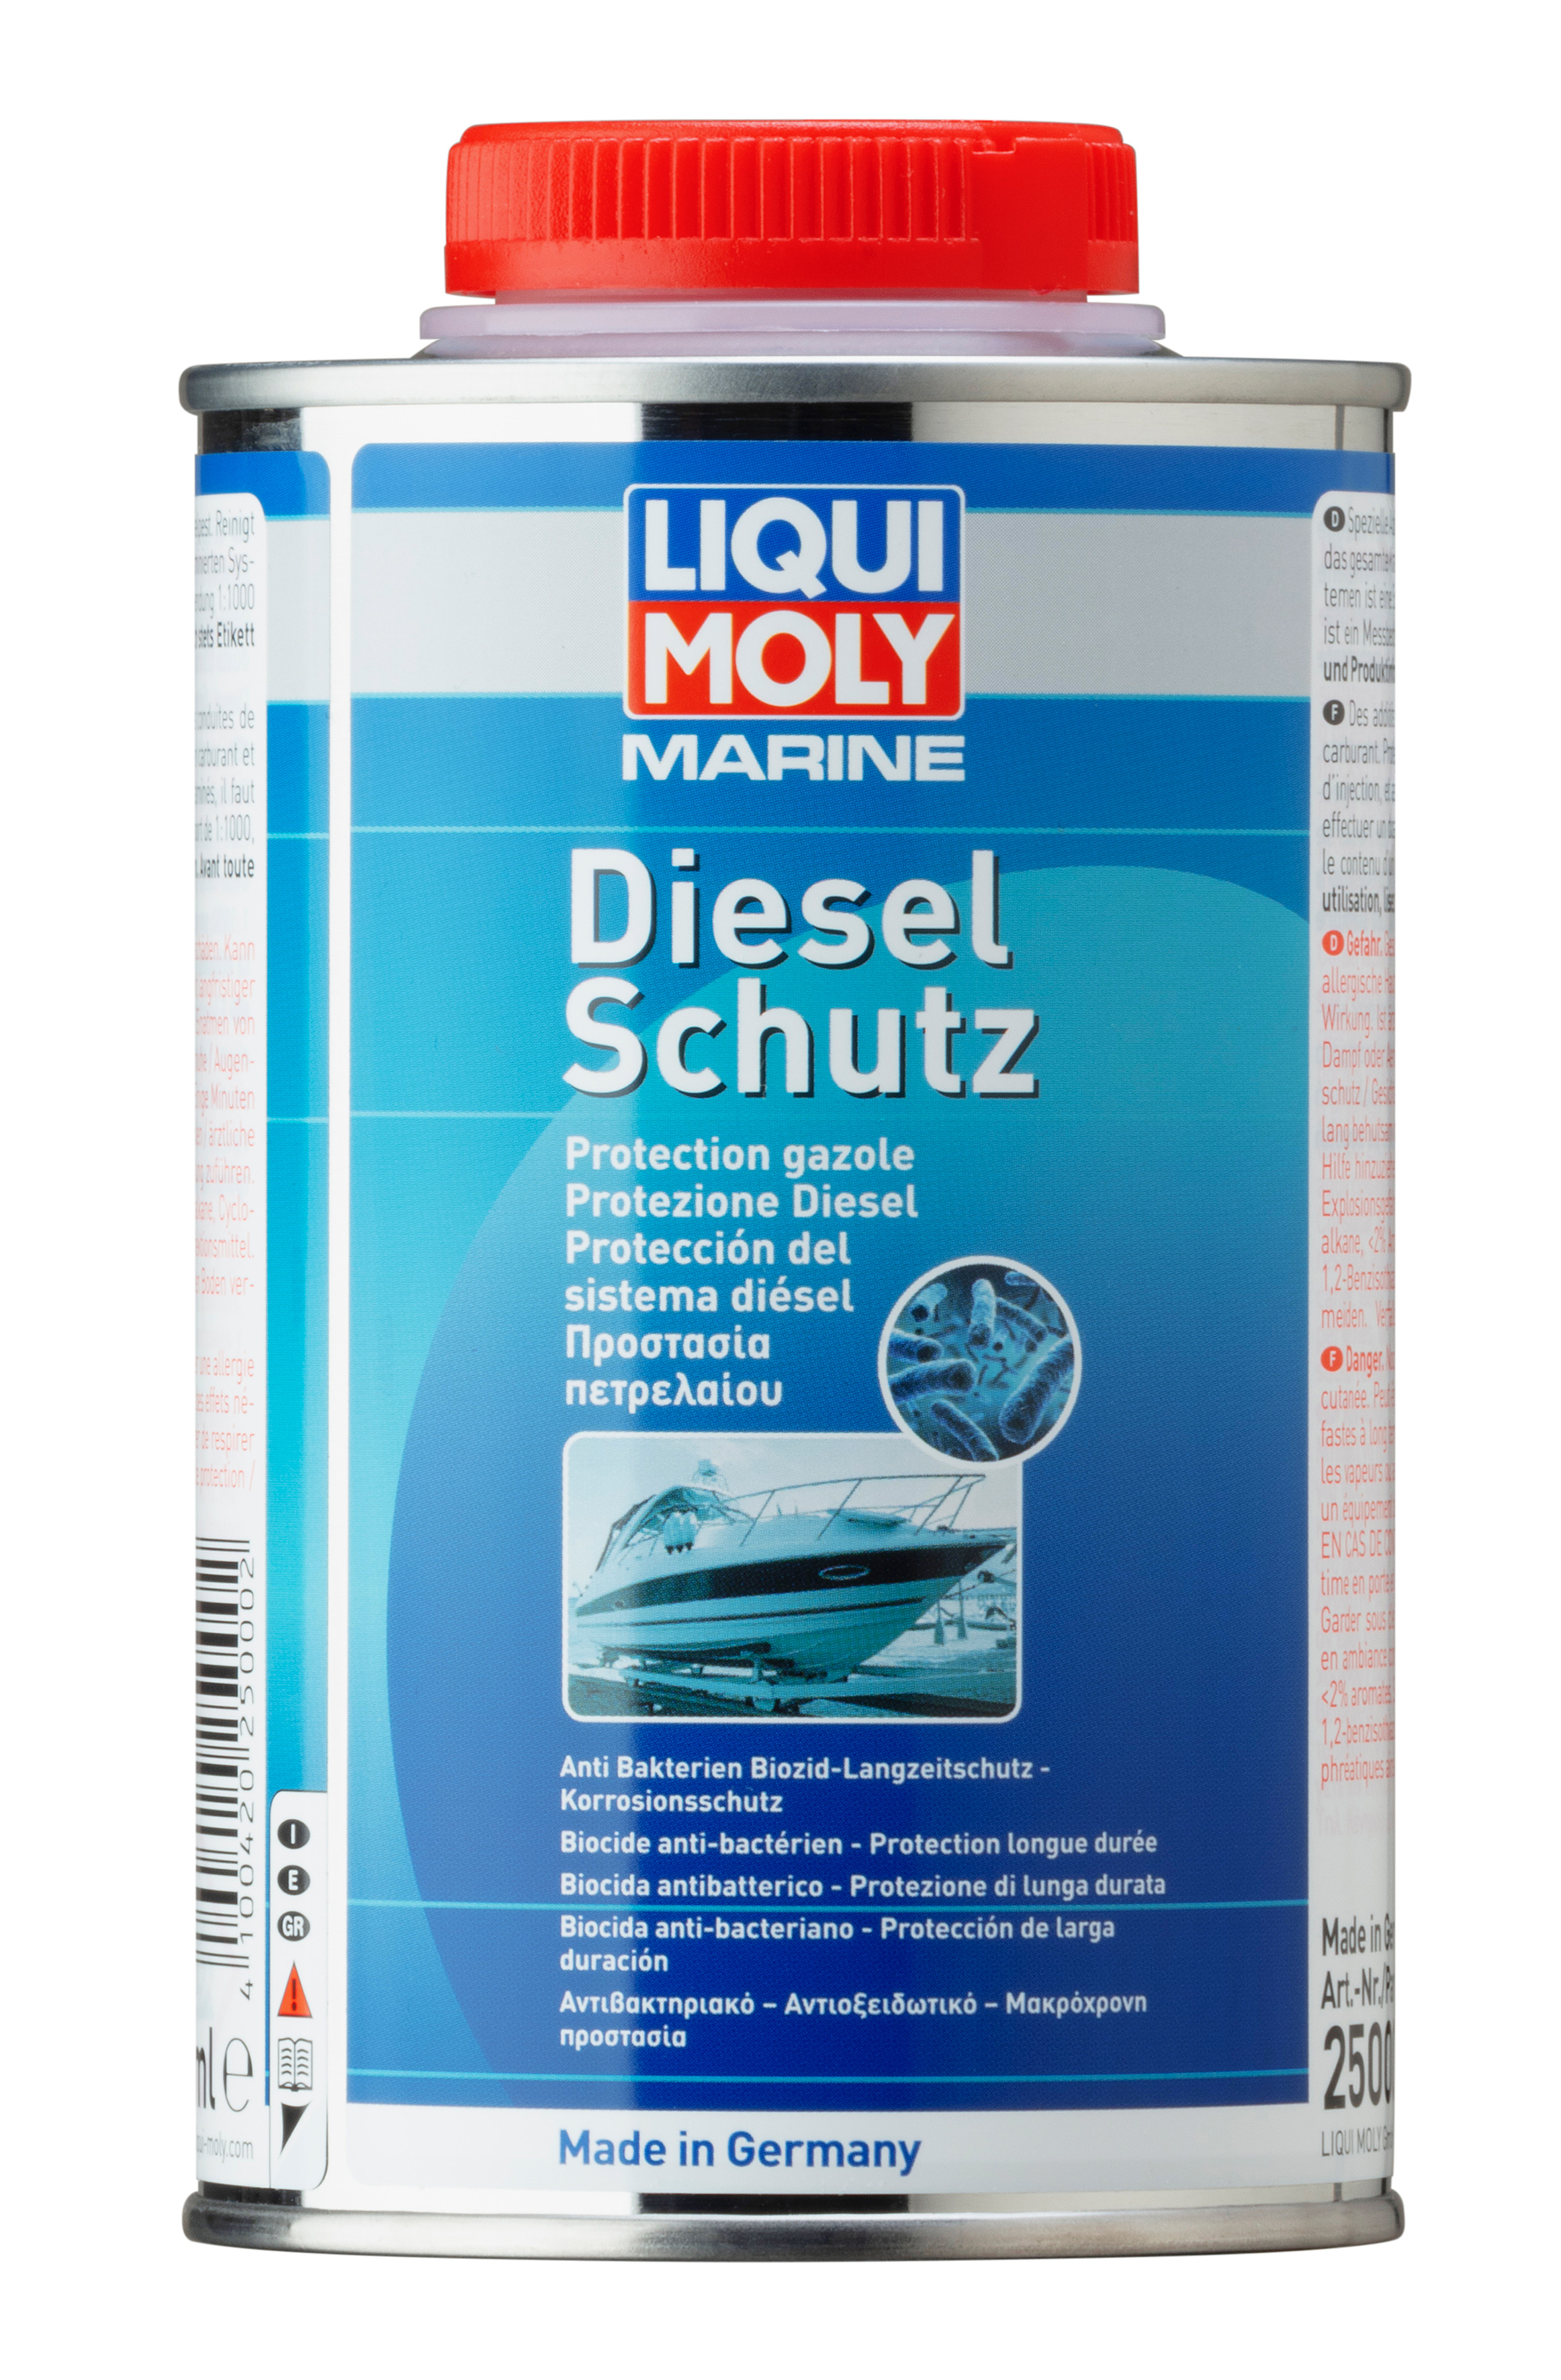 New LIQUI MOLY remedy against diesel bug